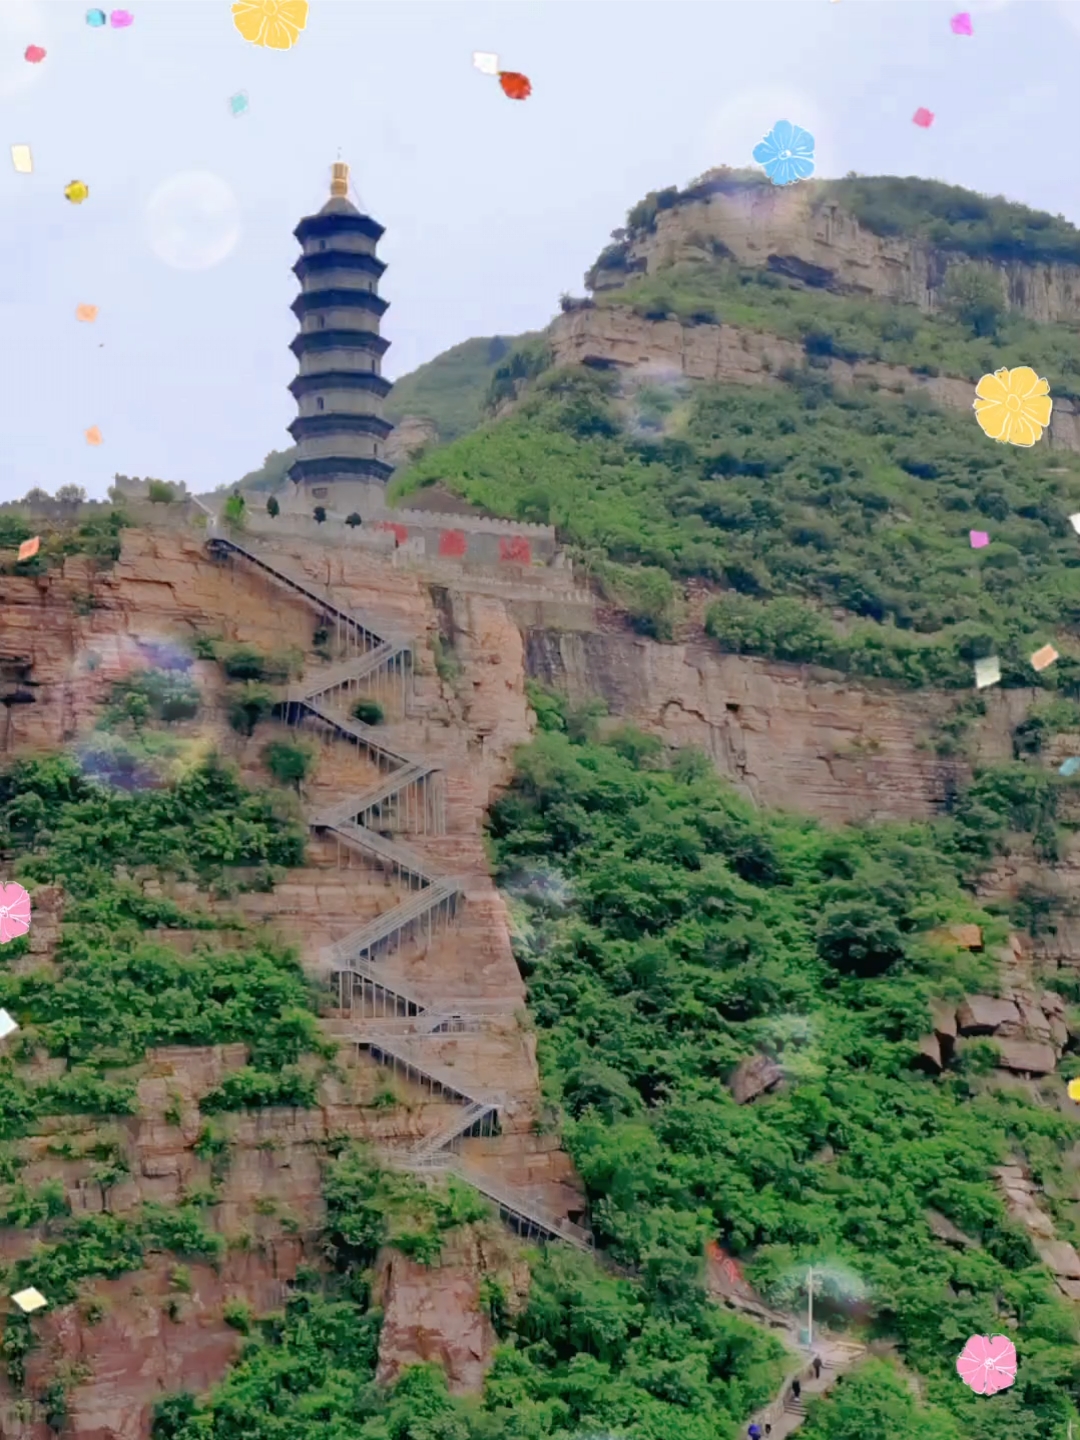 建在悬崖绝壁上的佛寿塔，位于长治壶关大河村，地处晋豫两省交界处，塔高耸天地，极目望江山，是个免费游玩